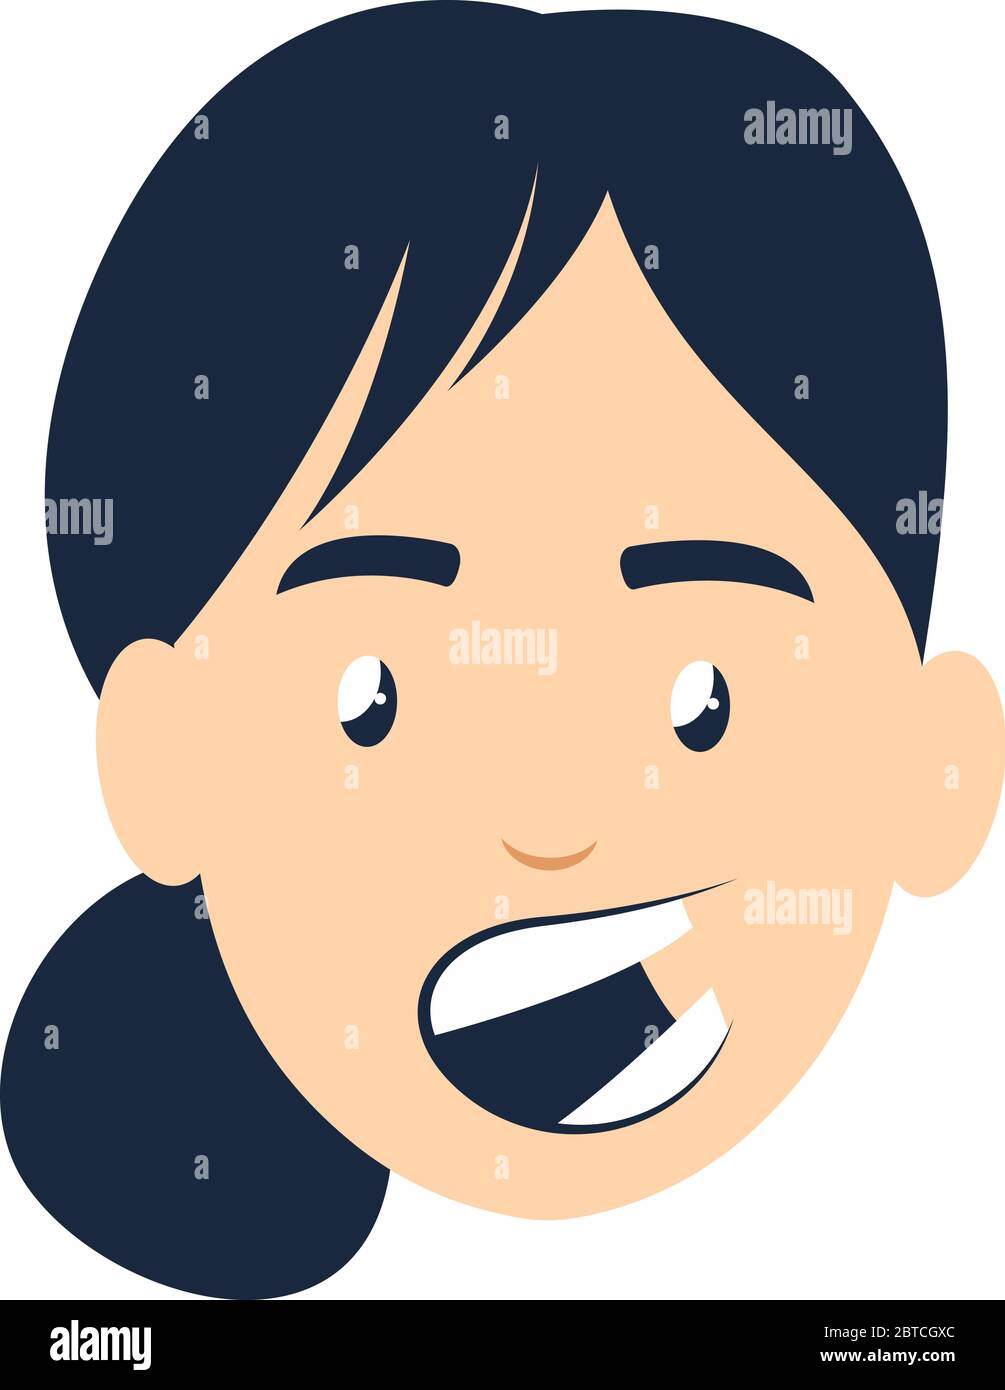 Girl talking emoji, illustration, vector on white background Stock Vector